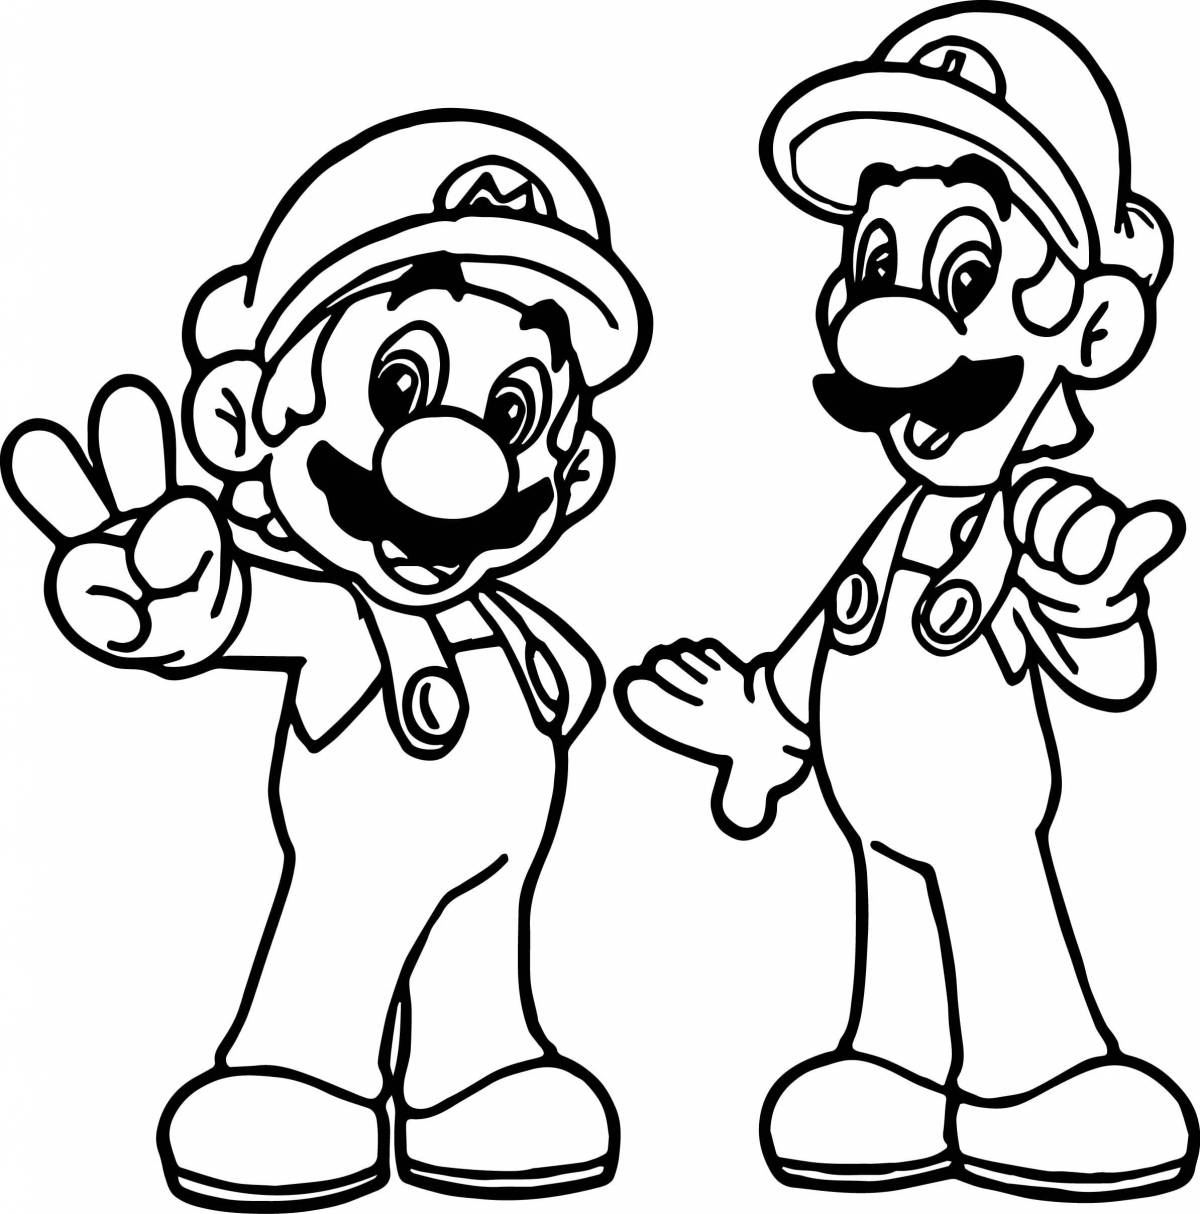 Luigi and mario #1